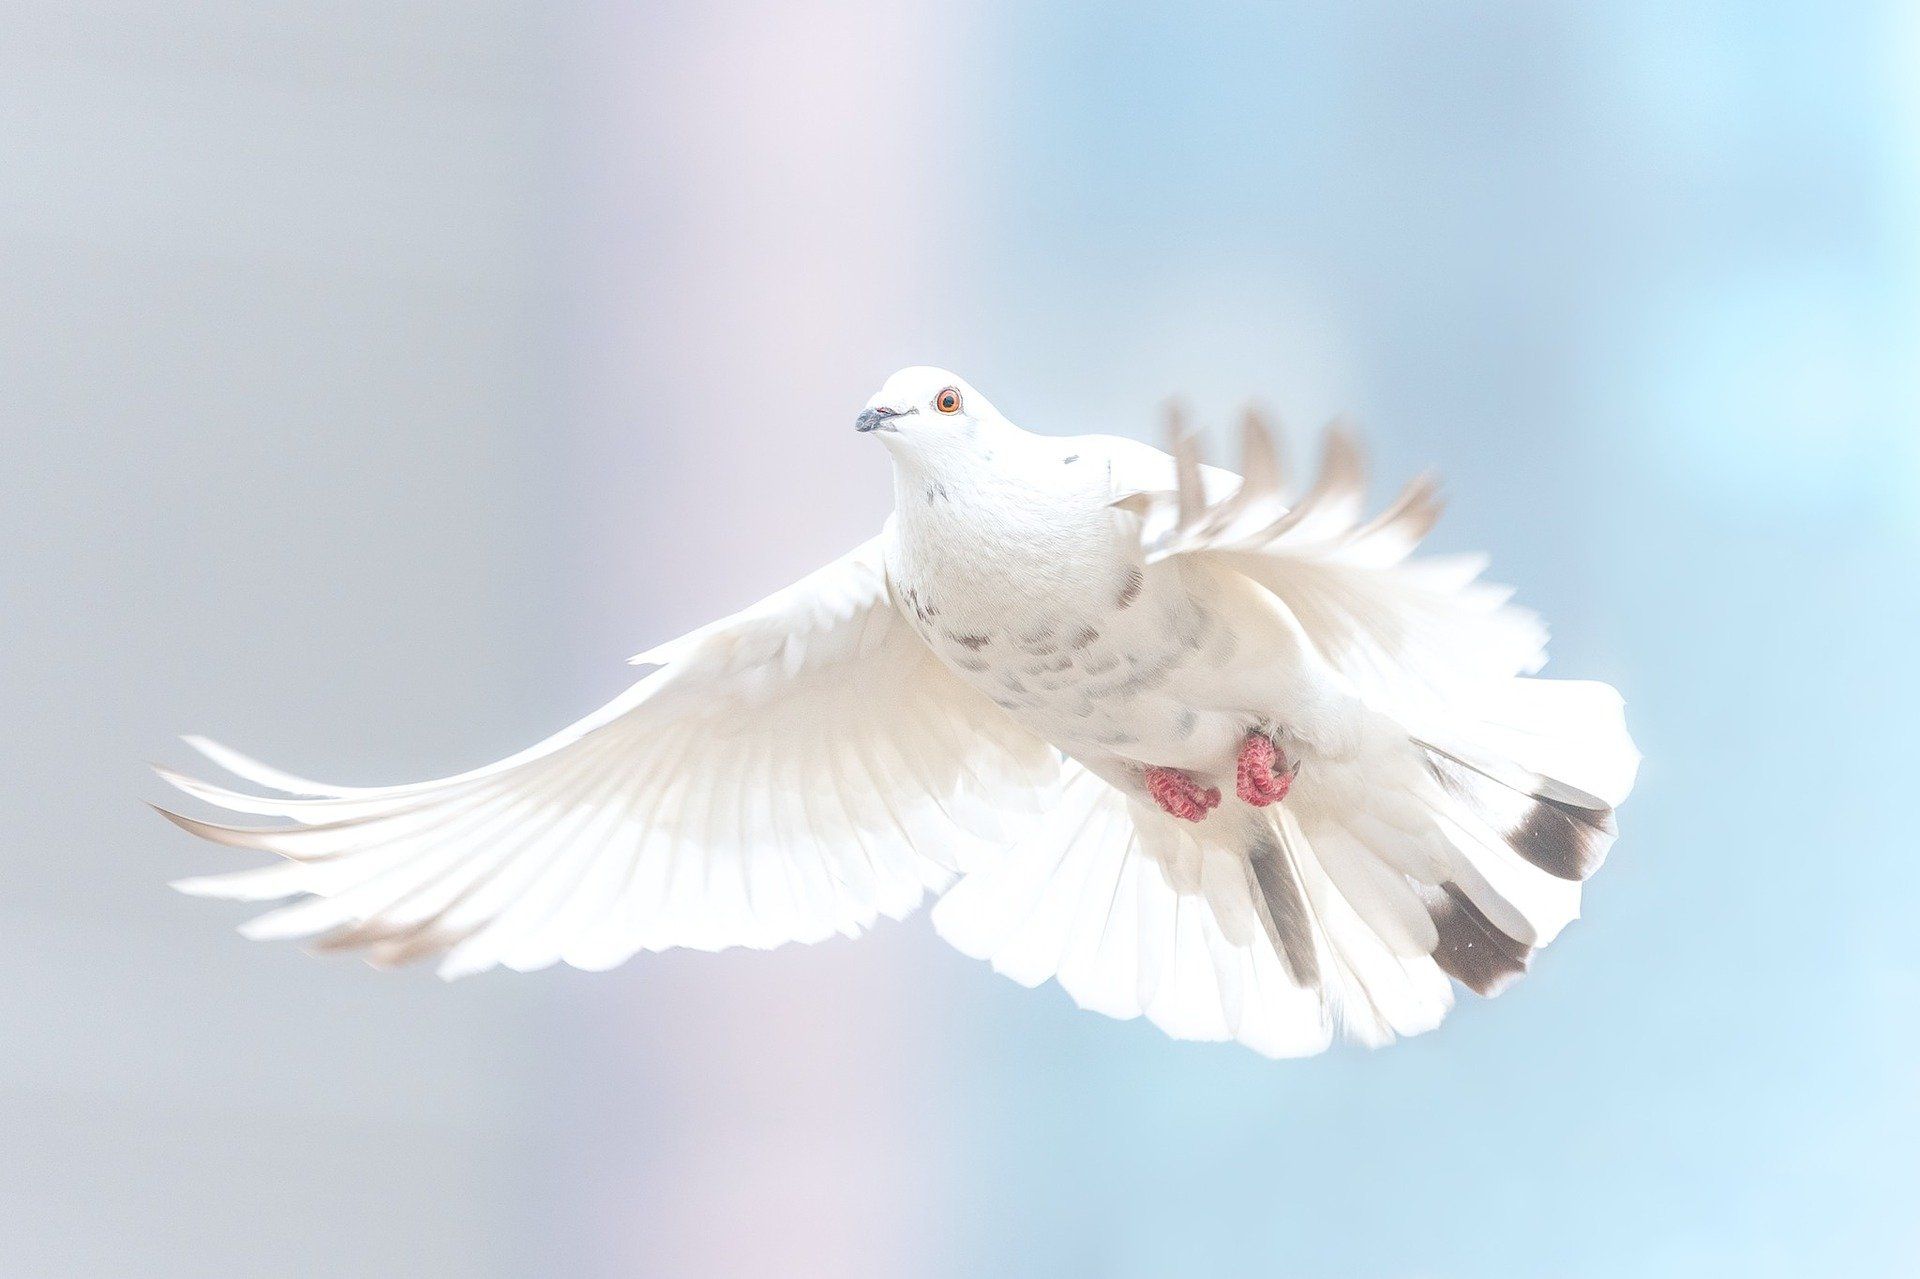 White dove in flight against blue sky